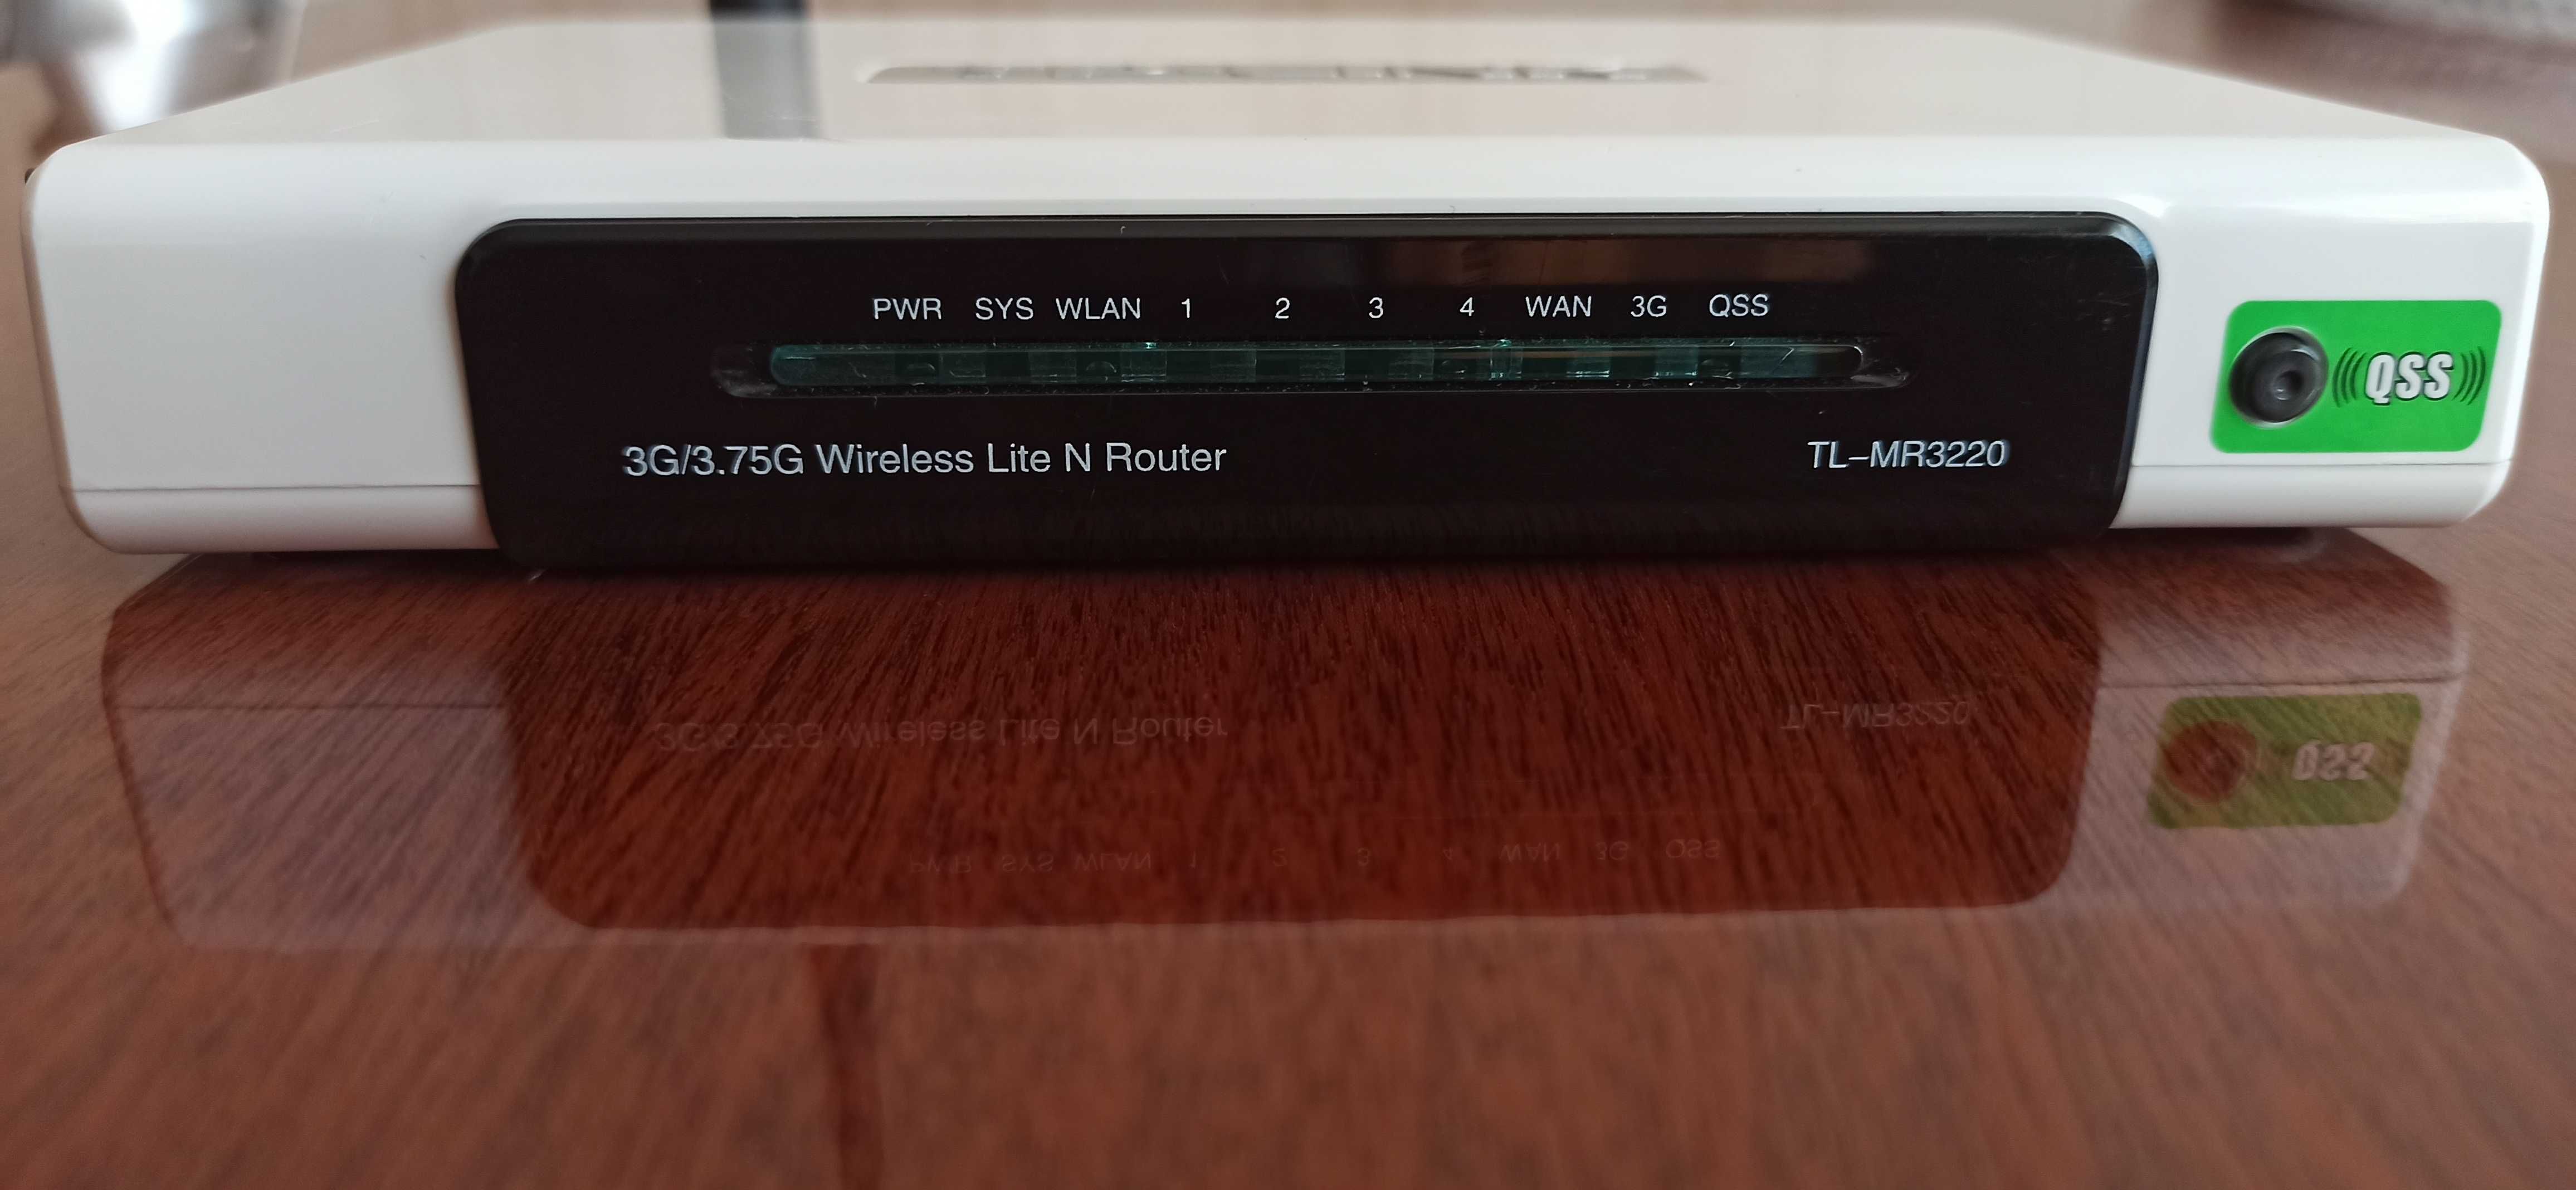 Wi-Fi роутер TP-LINK TL-MR3220 _USB 2,0( 3G/3,75G)